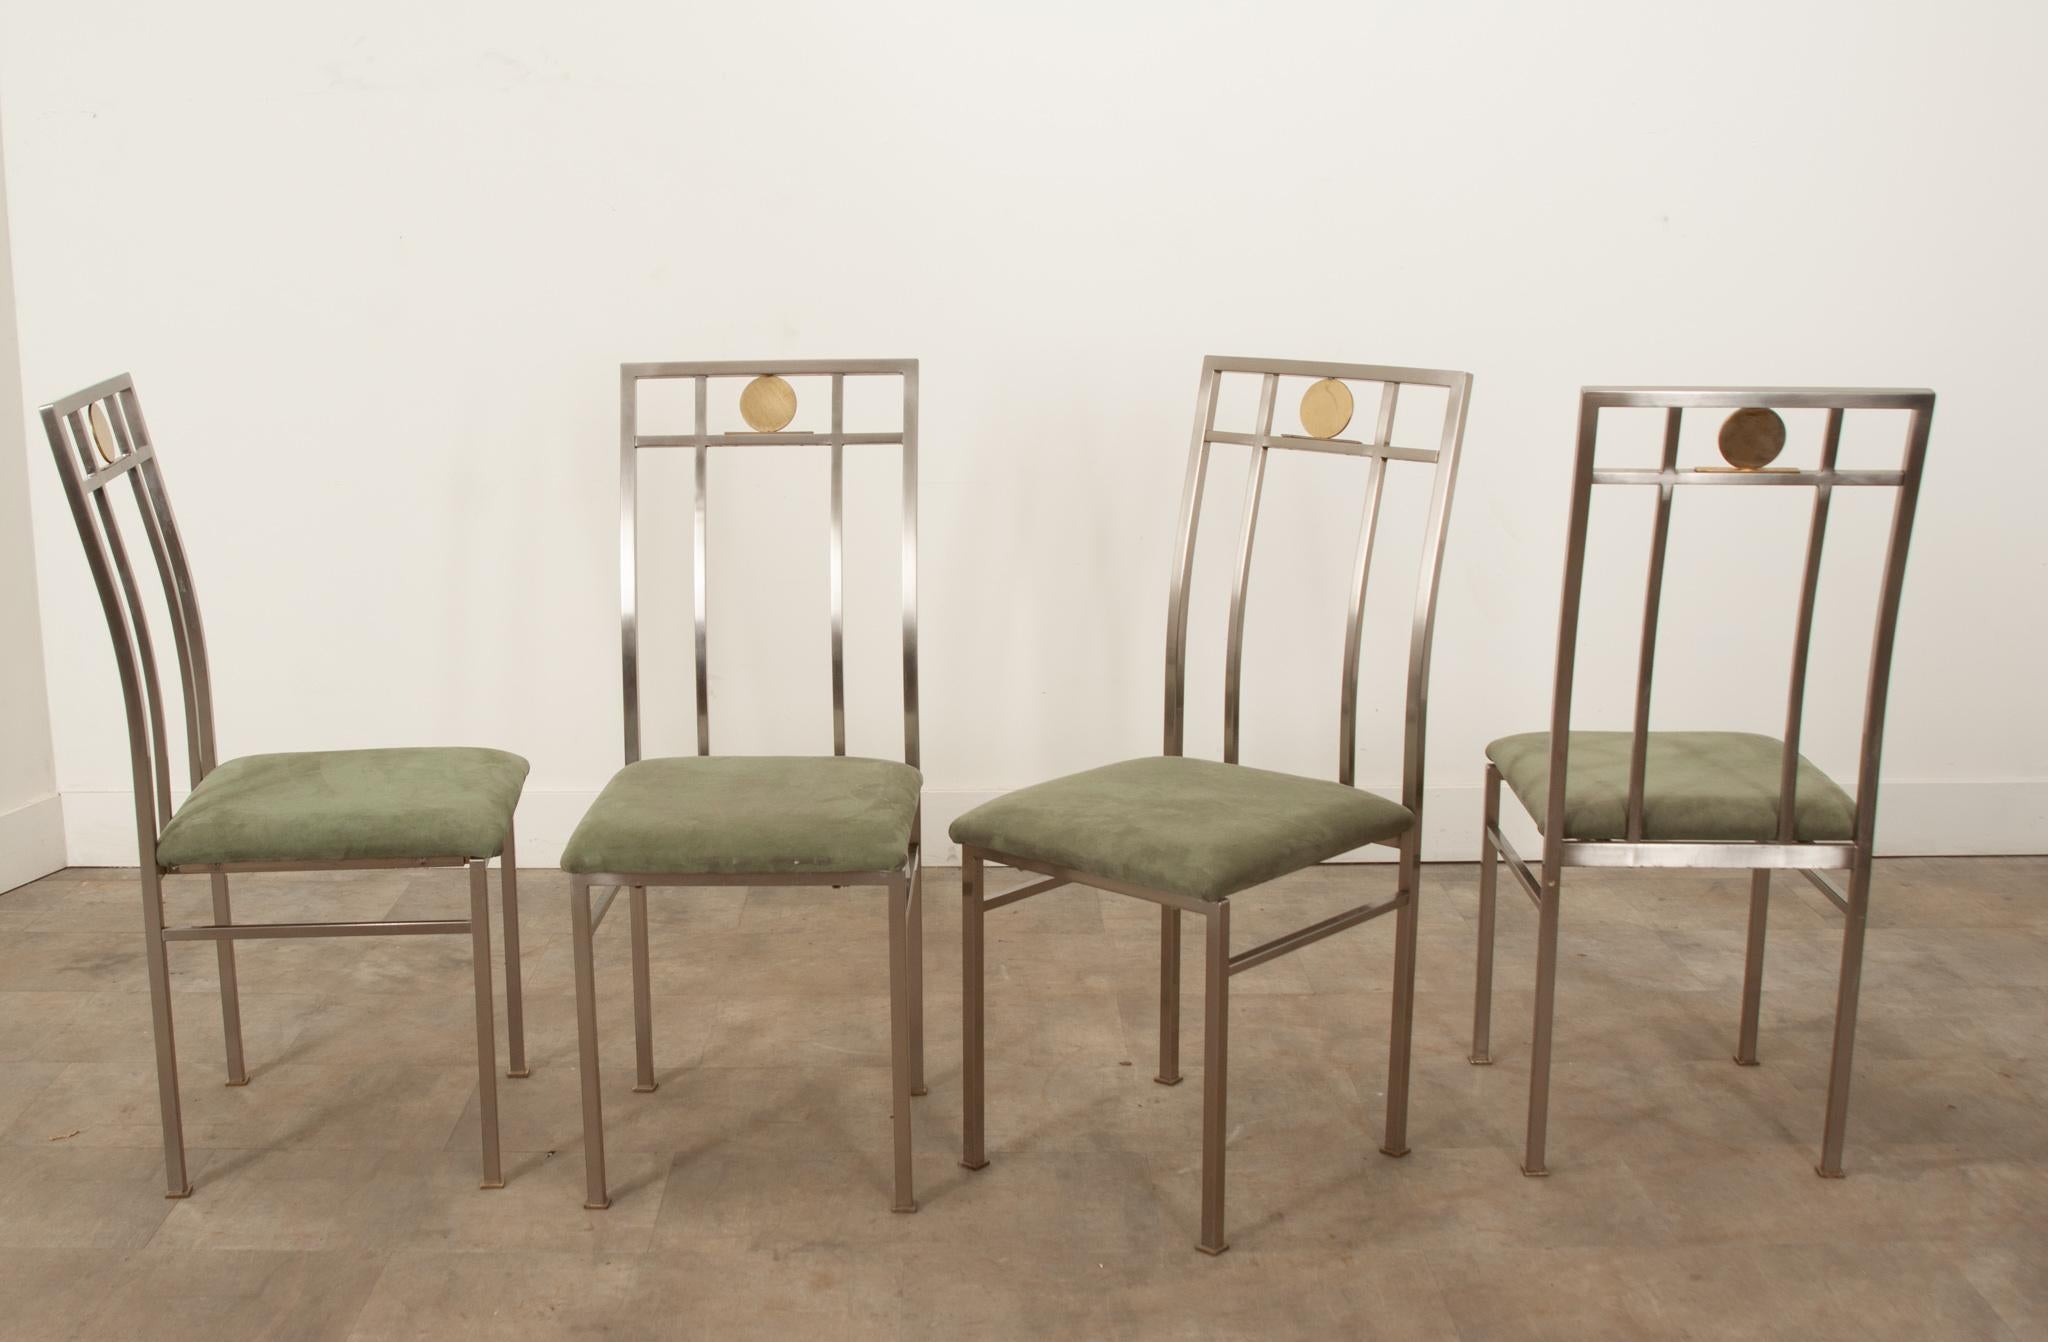 Un fabuleux ensemble de quatre chaises de salle à manger modernes du milieu du siècle, fabriquées en France vers 1960. Ces magnifiques chaises sont en excellent état et présentent des cadres en métal doré et argenté extrêmement robustes tout en